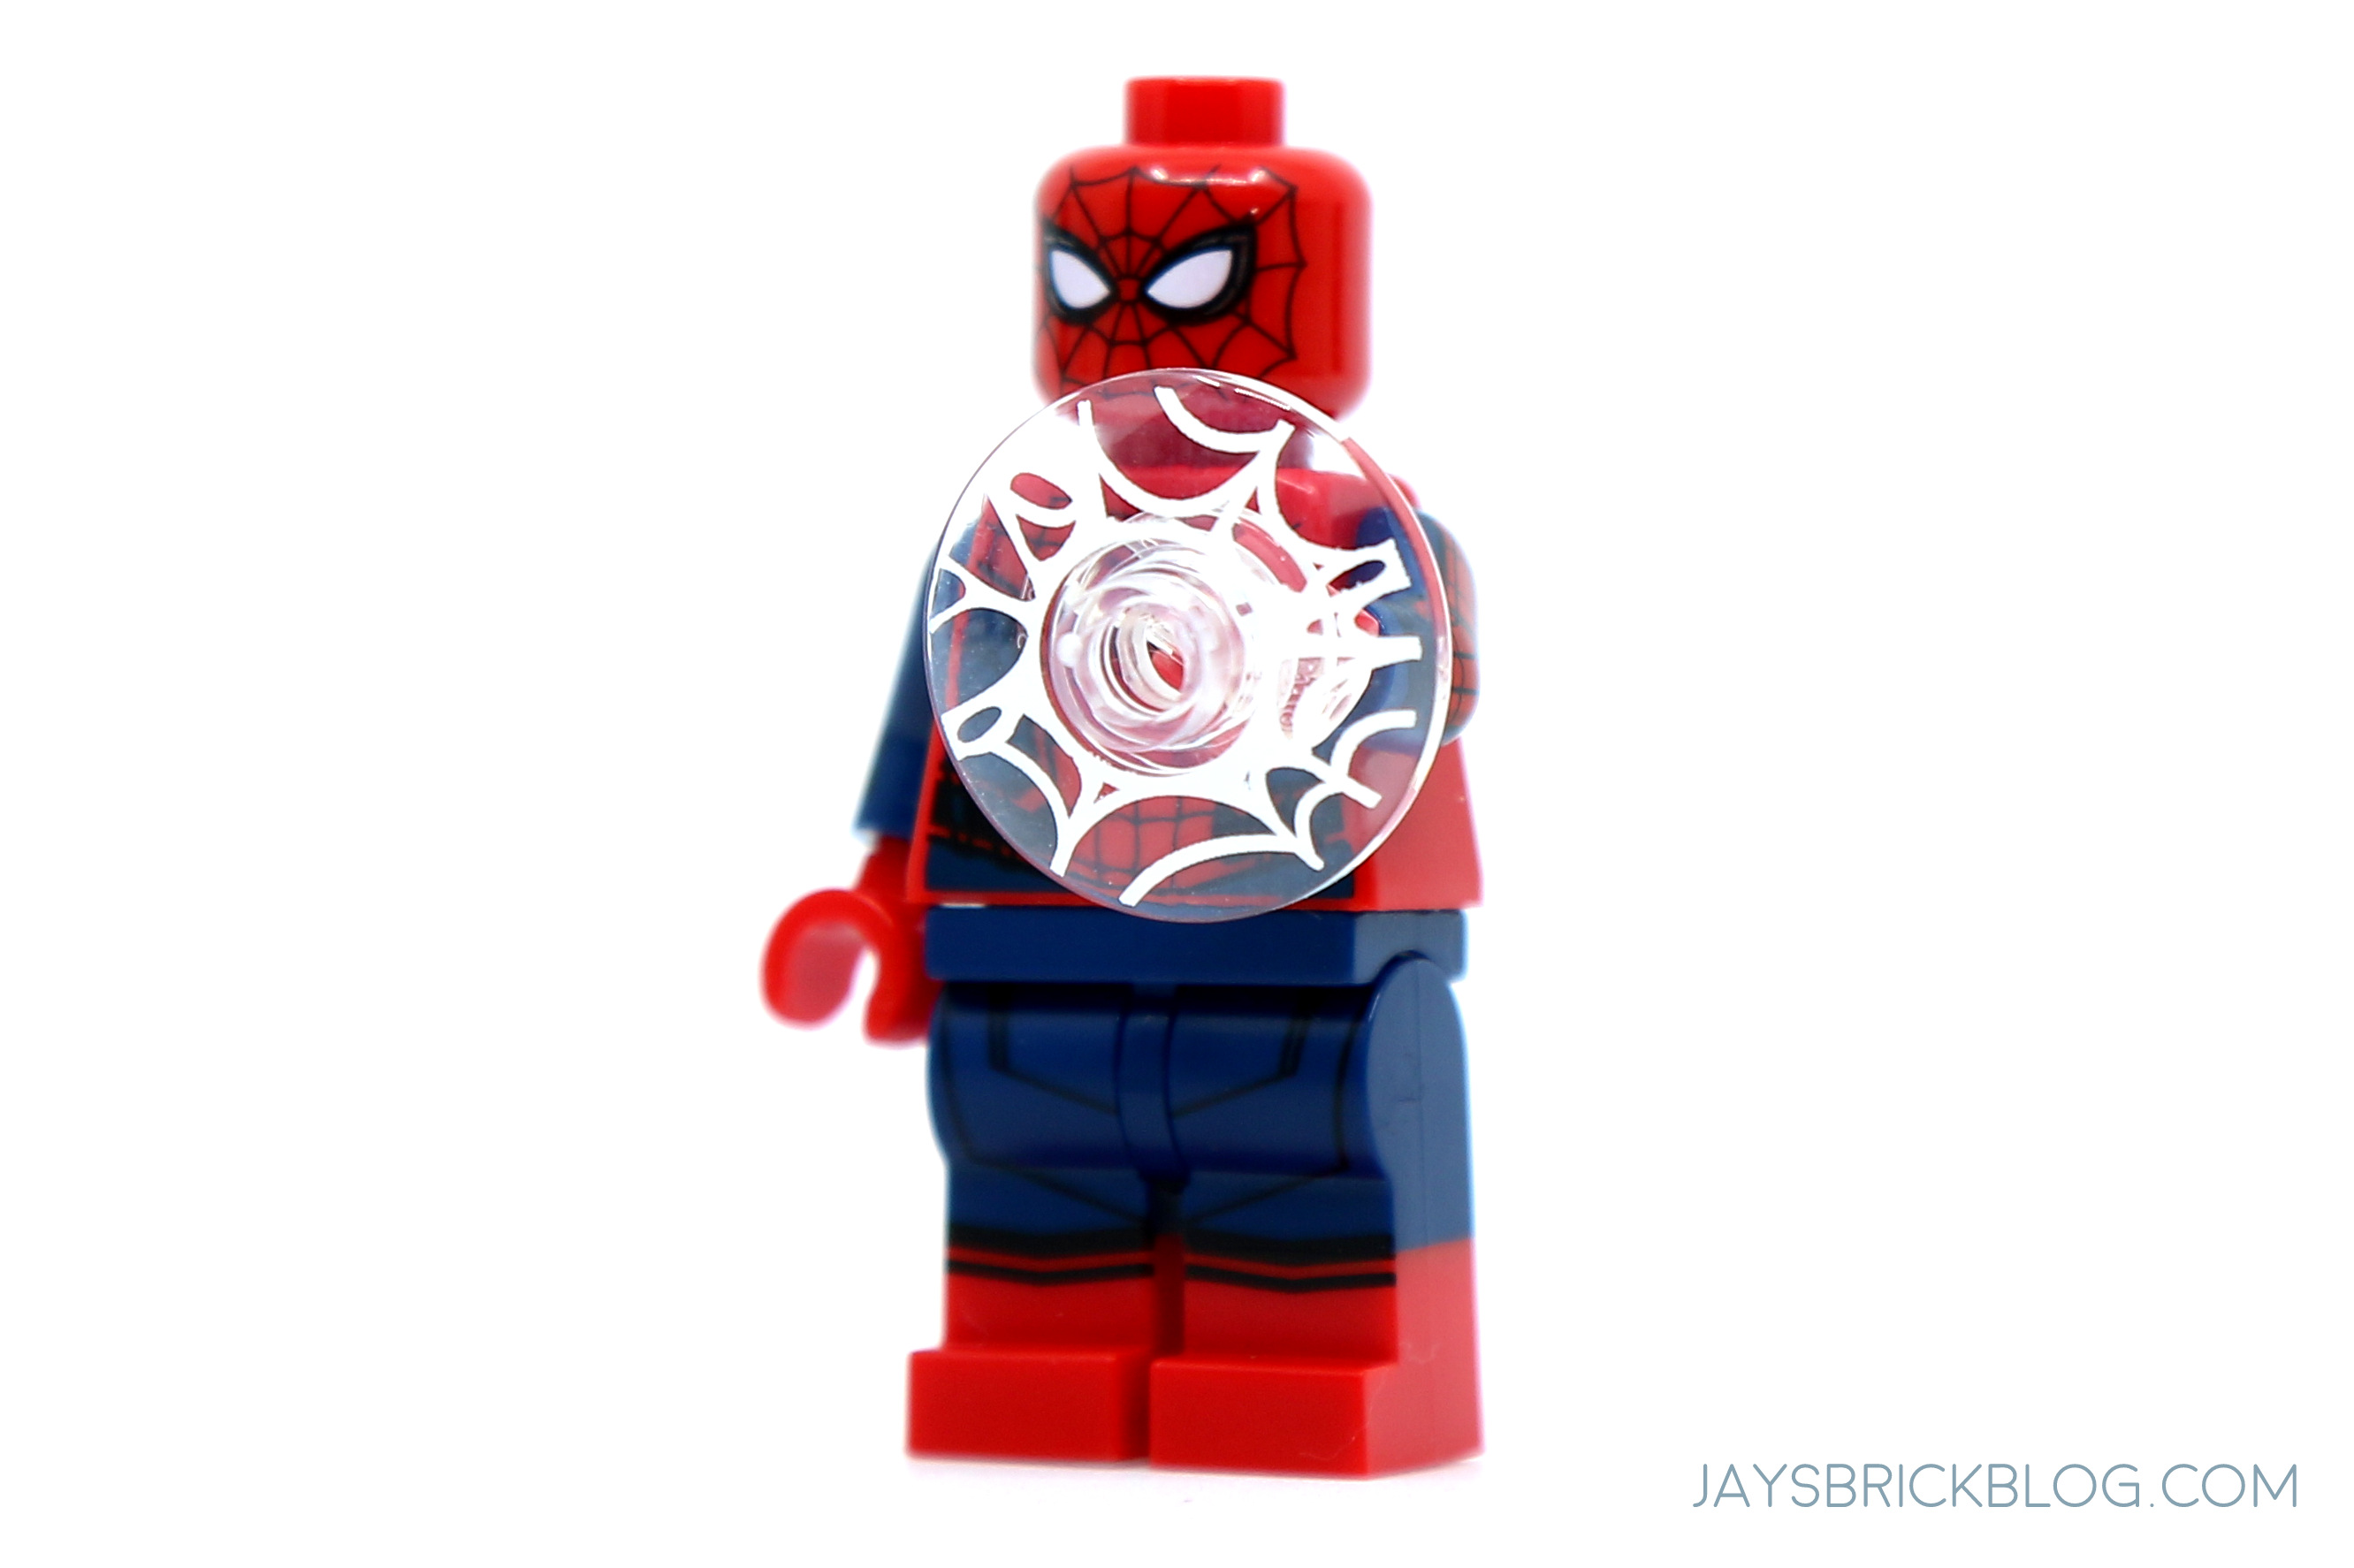 spiderman ffh lego sets